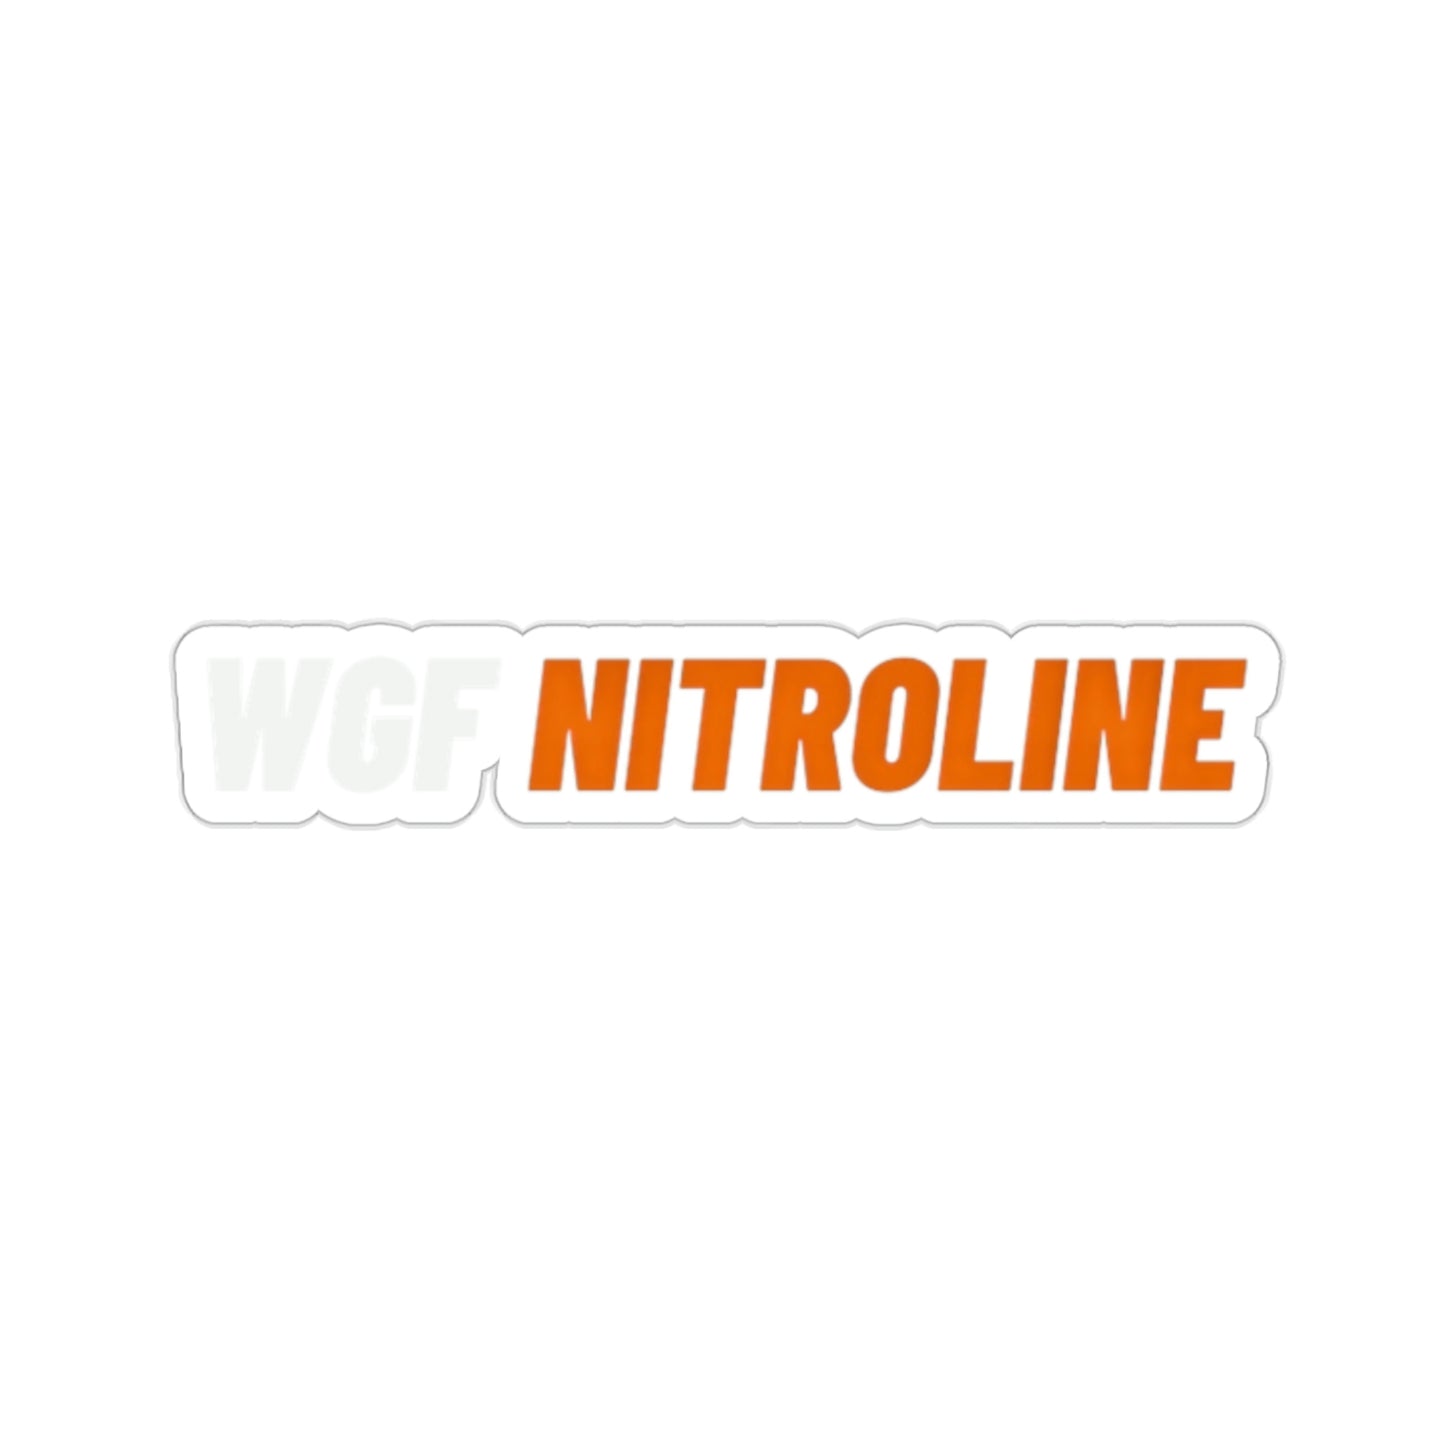 WGF NItroline Kiss-Cut Stickers